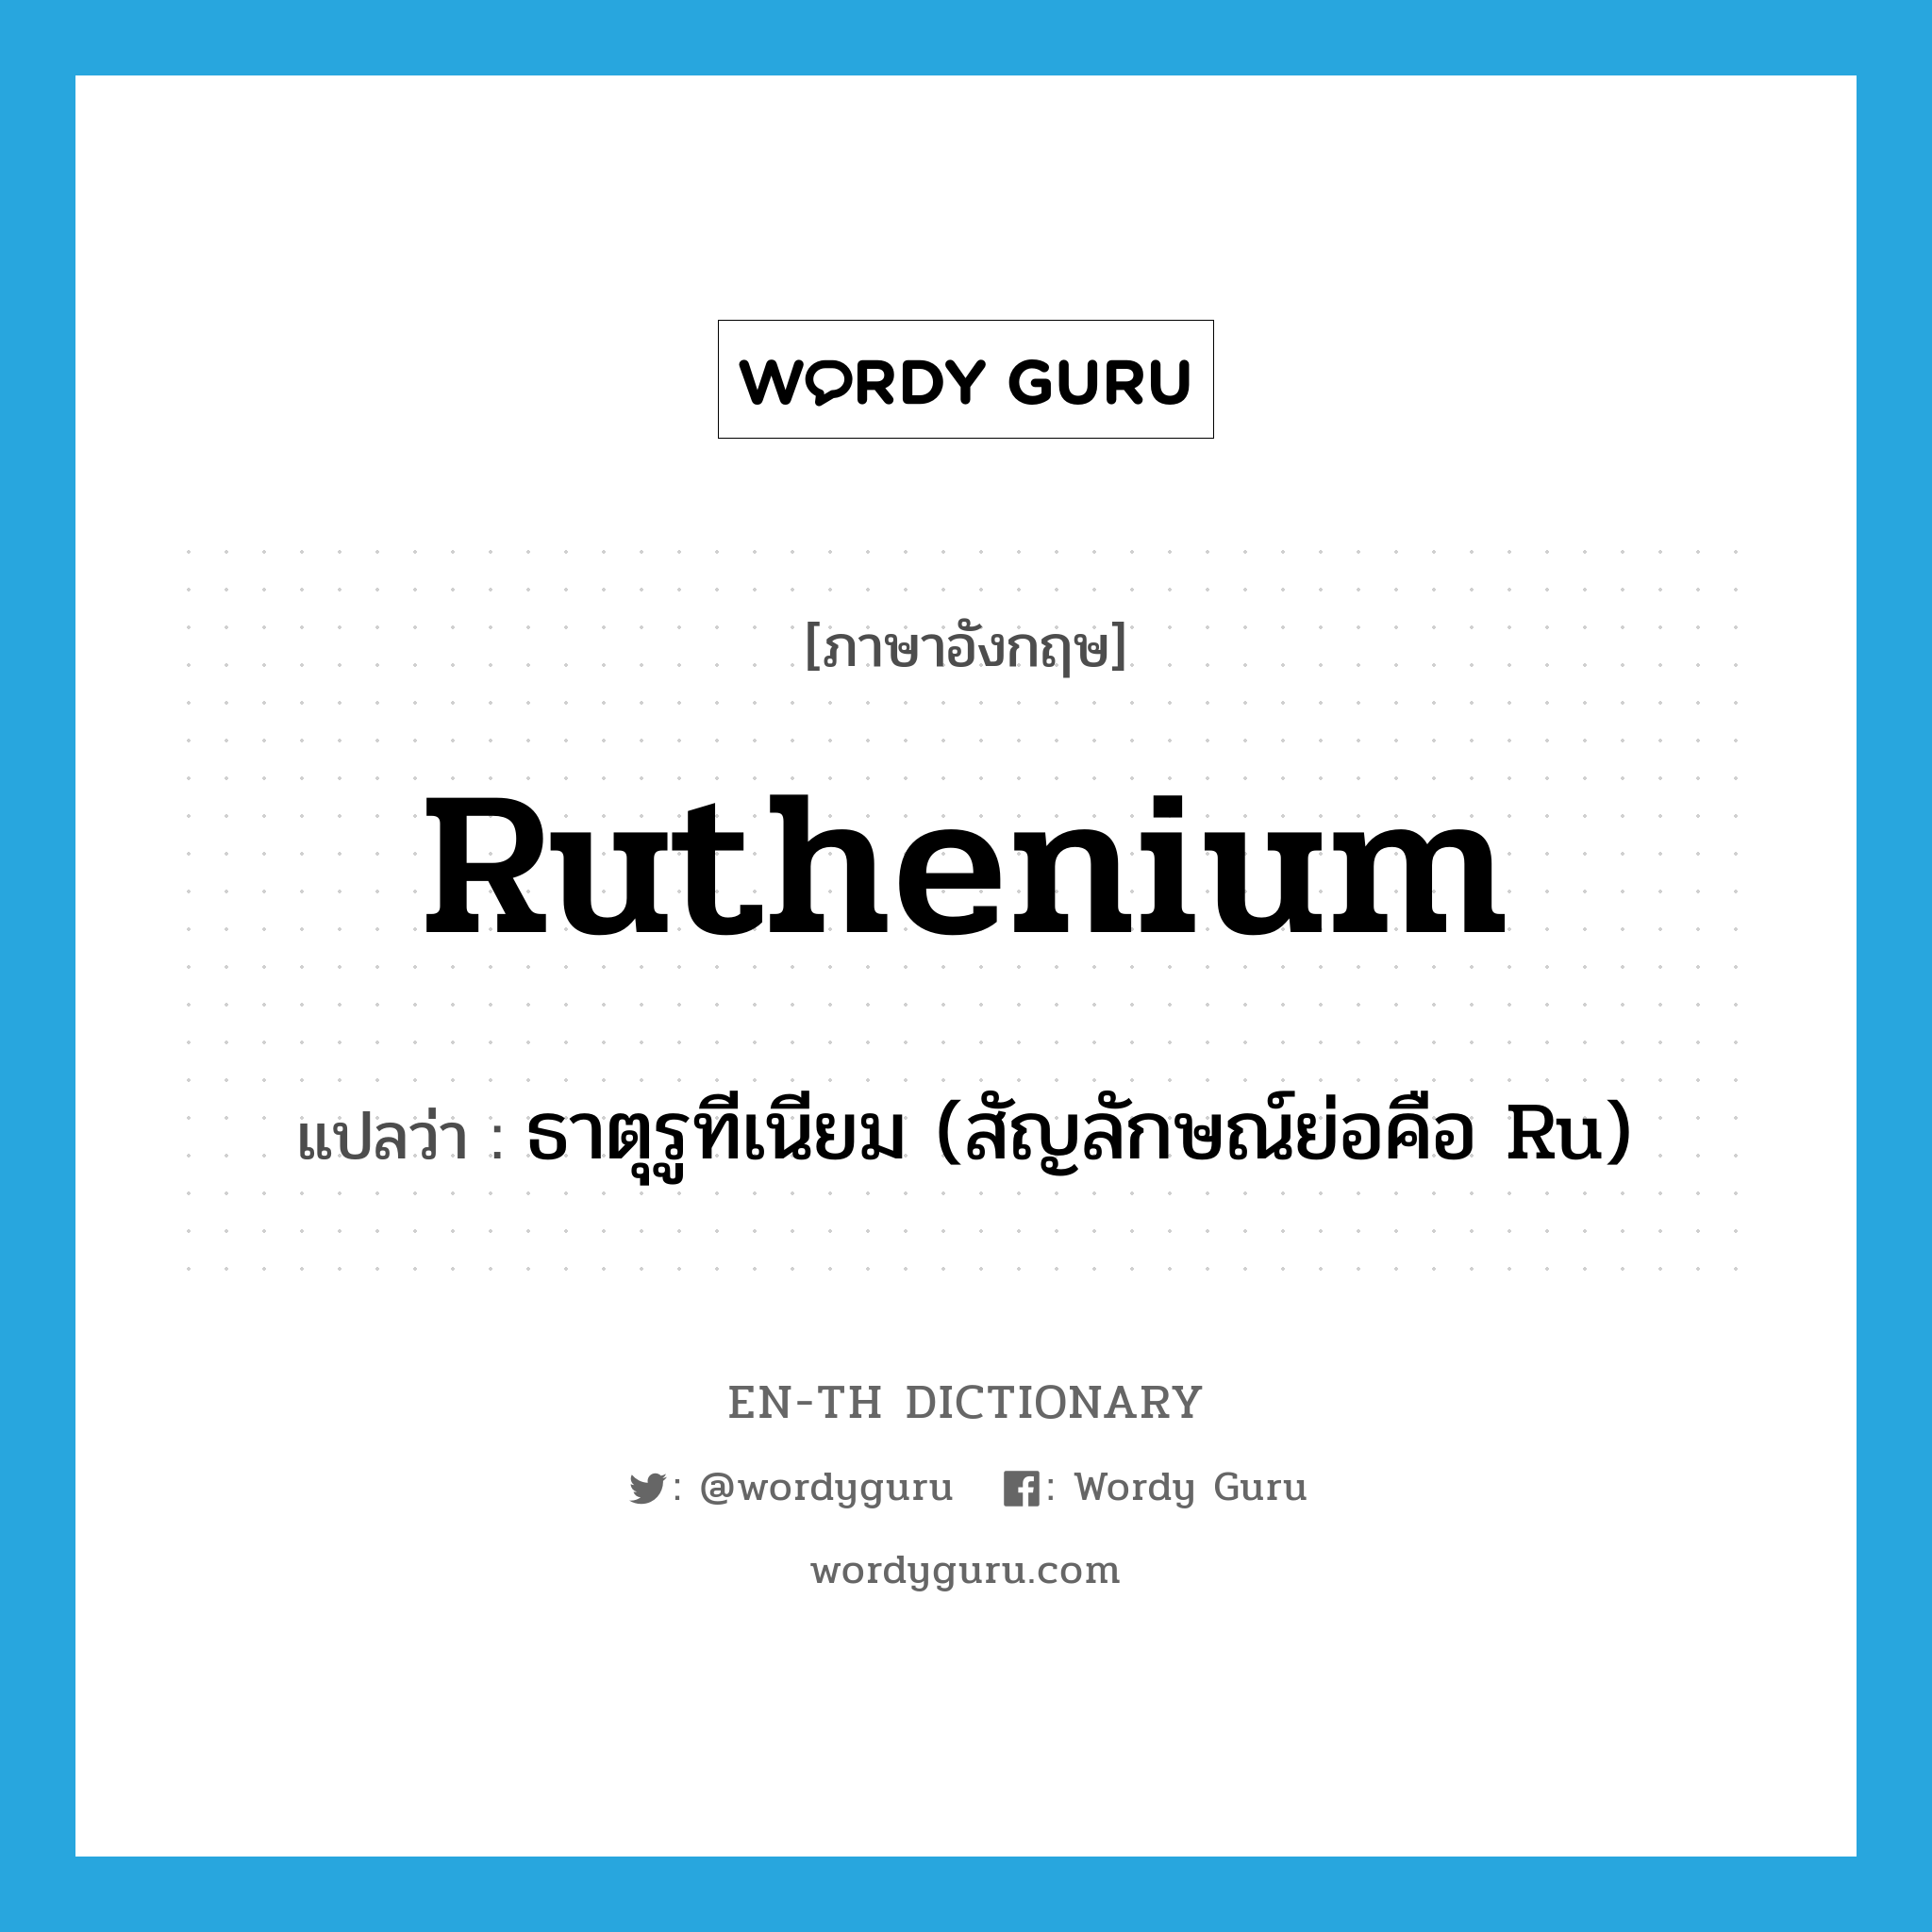 ruthenium แปลว่า?, คำศัพท์ภาษาอังกฤษ ruthenium แปลว่า ธาตุรูทีเนียม (สัญลักษณ์ย่อคือ Ru) ประเภท N หมวด N